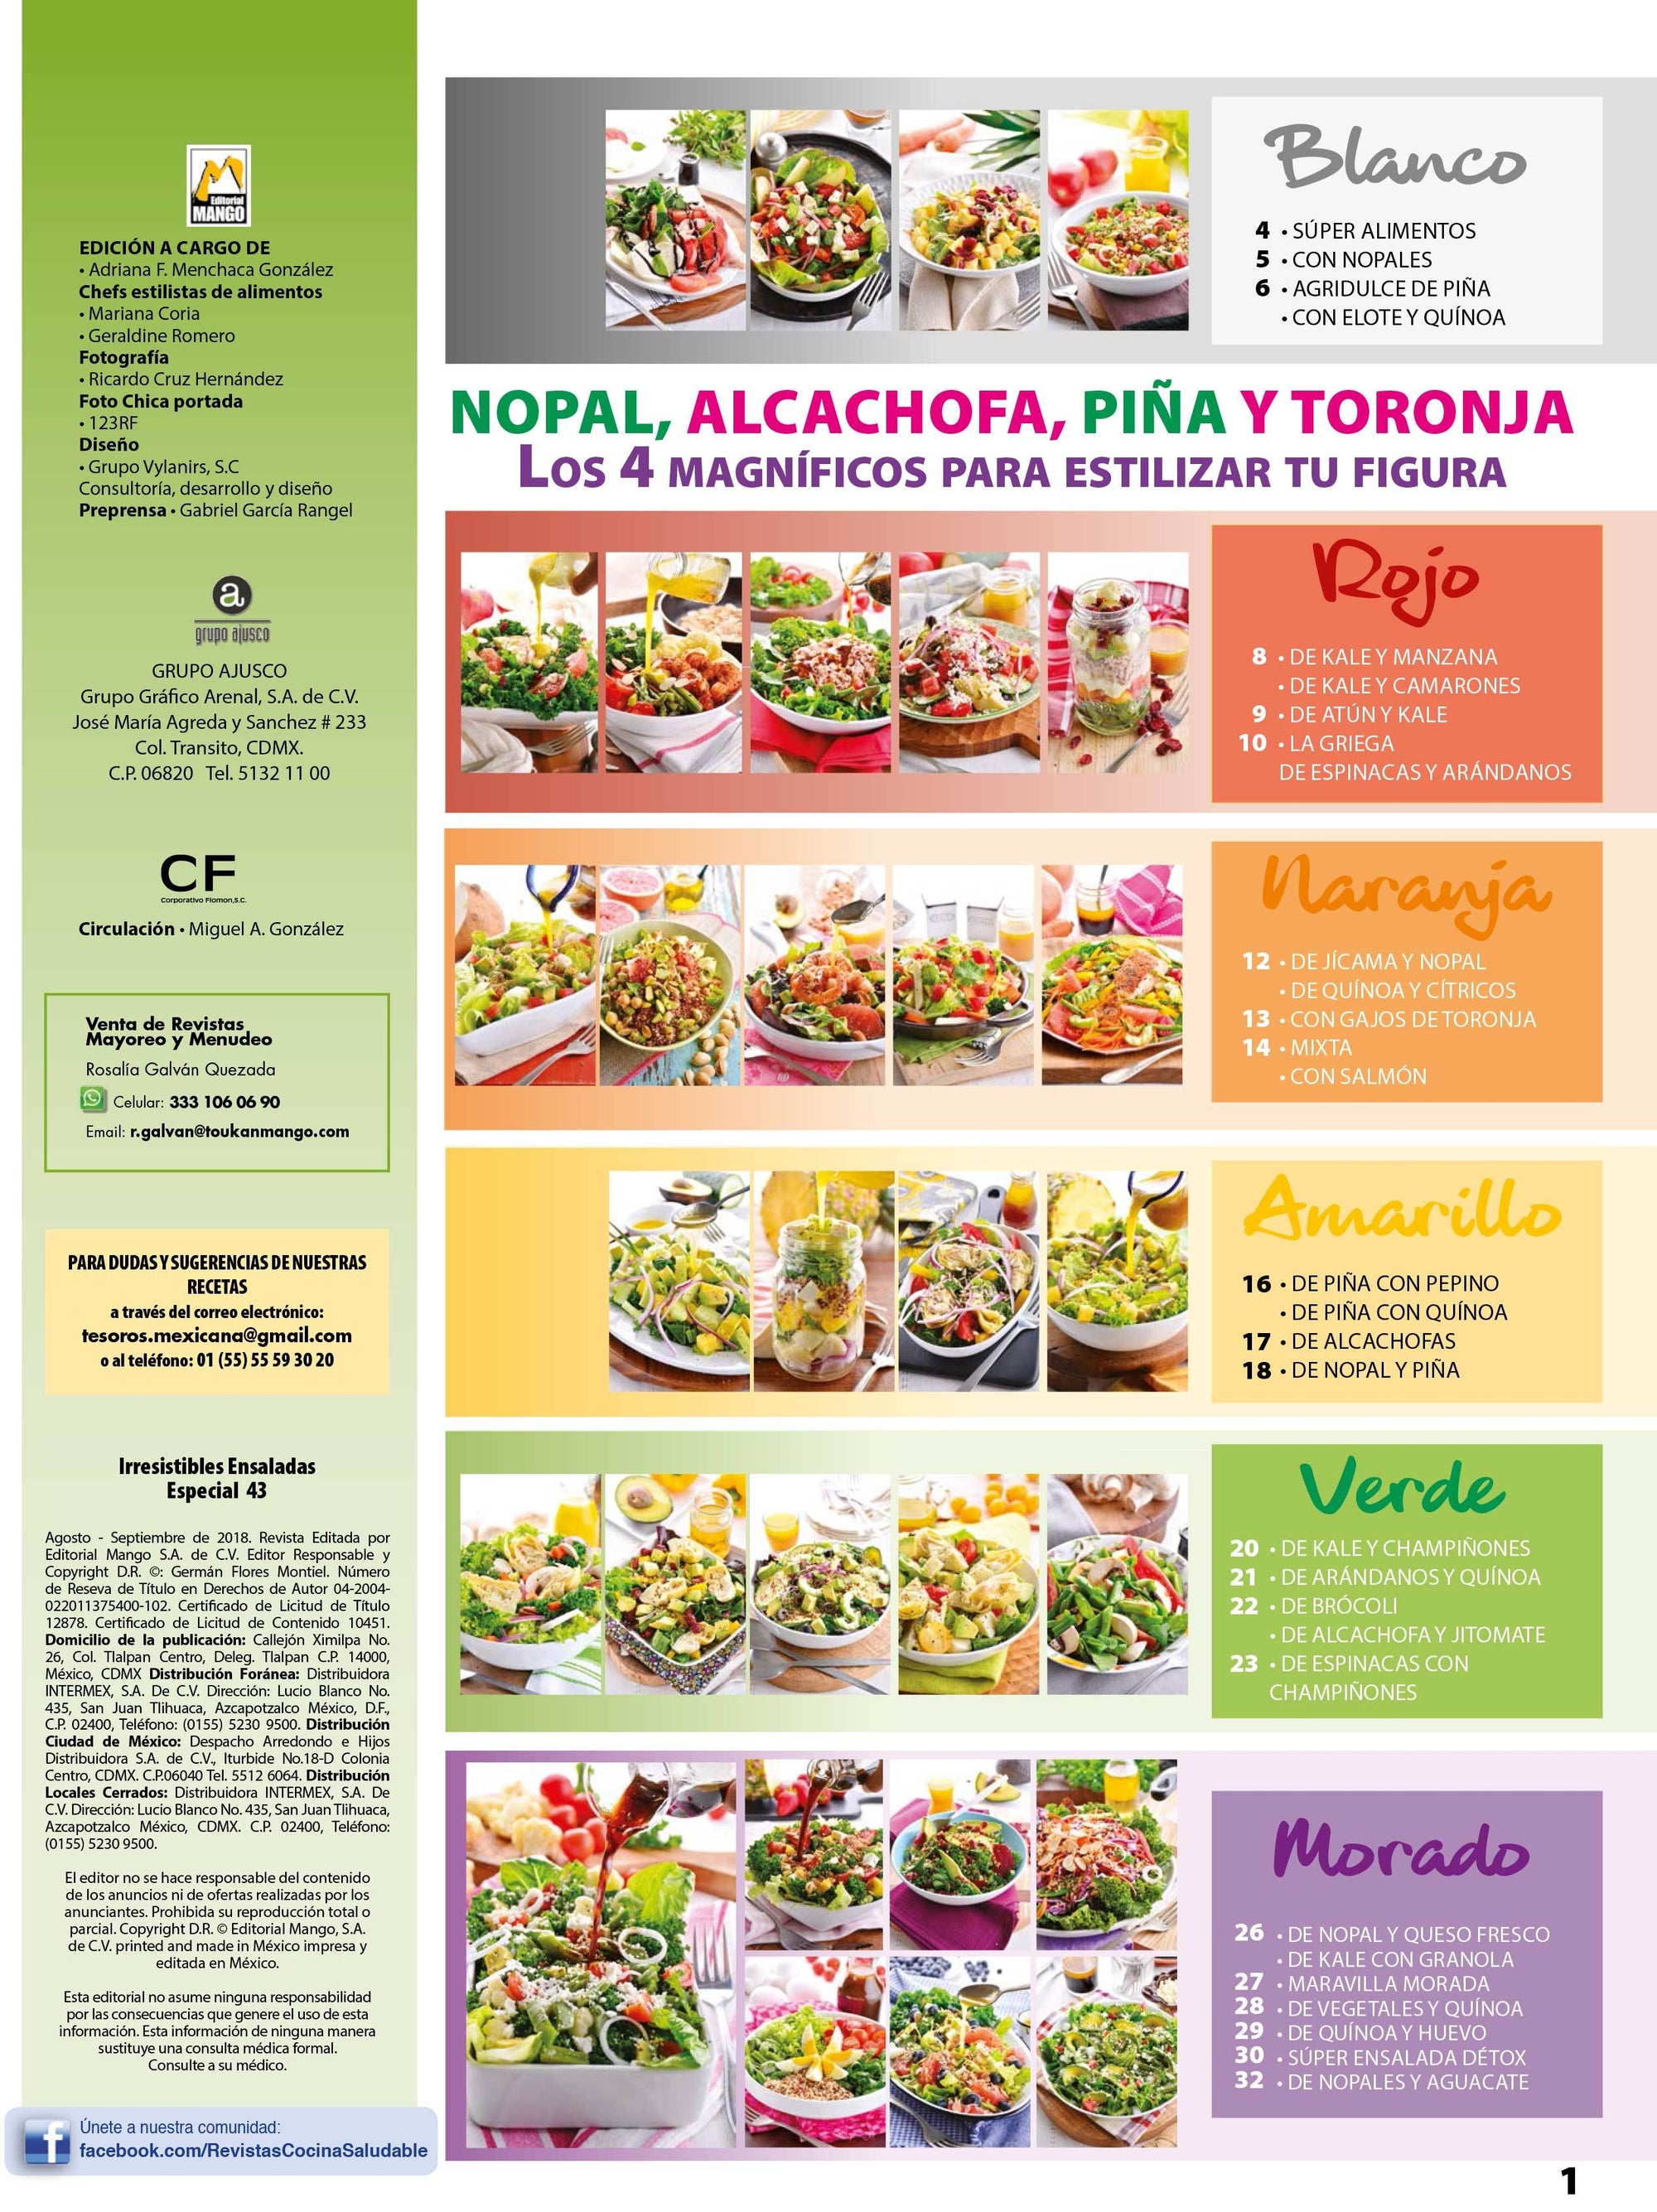 Irresistibles Ensaladas Especial 43 - Nopal, alcachofa, pi̱a y toronja los 4 magnÌ_ficos - Formato Digital - ToukanMango